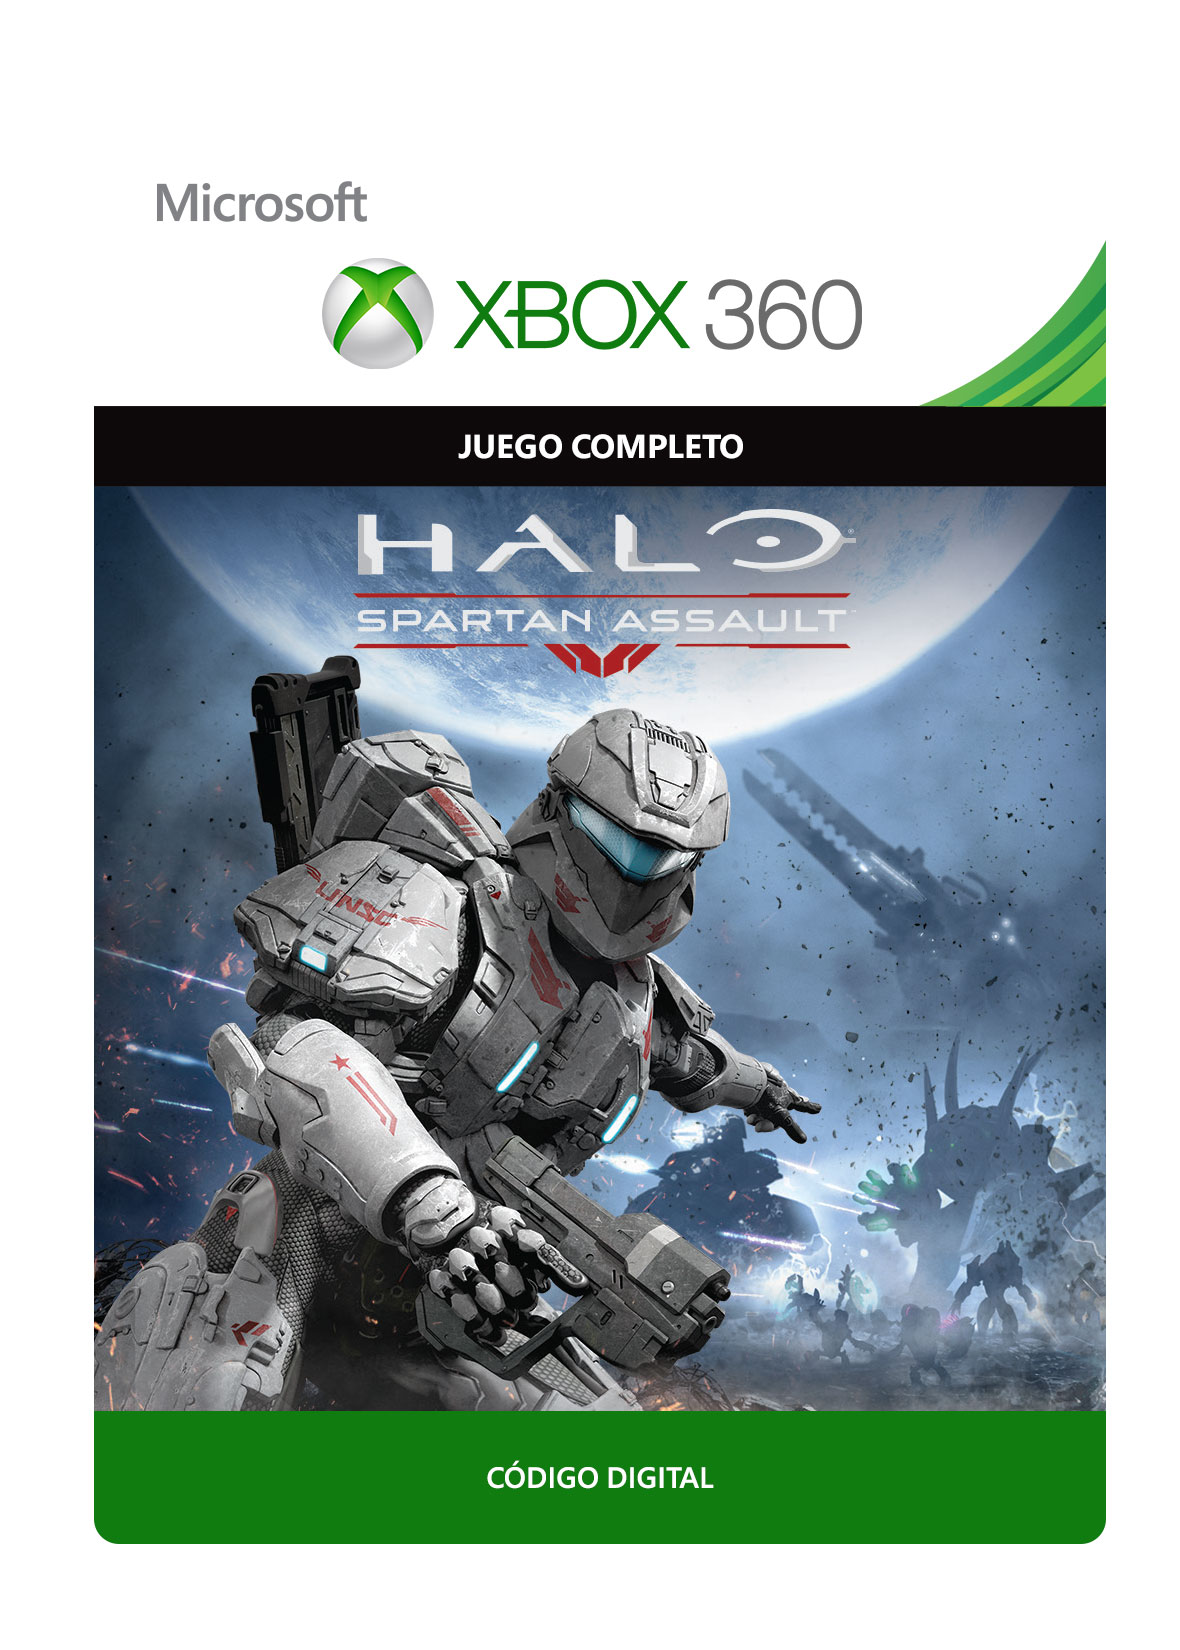 Xbox 360 - Halo:Spartan Assault - Juego Completo Descargable